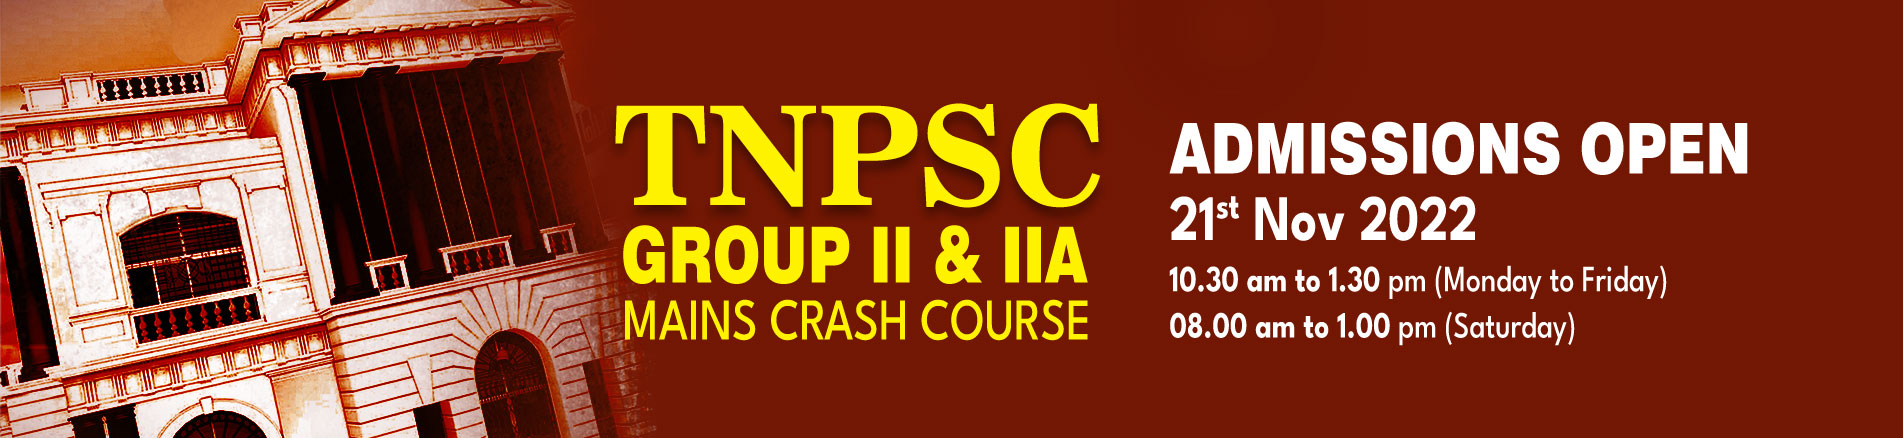 Tnpsc gr ii&iia crash course